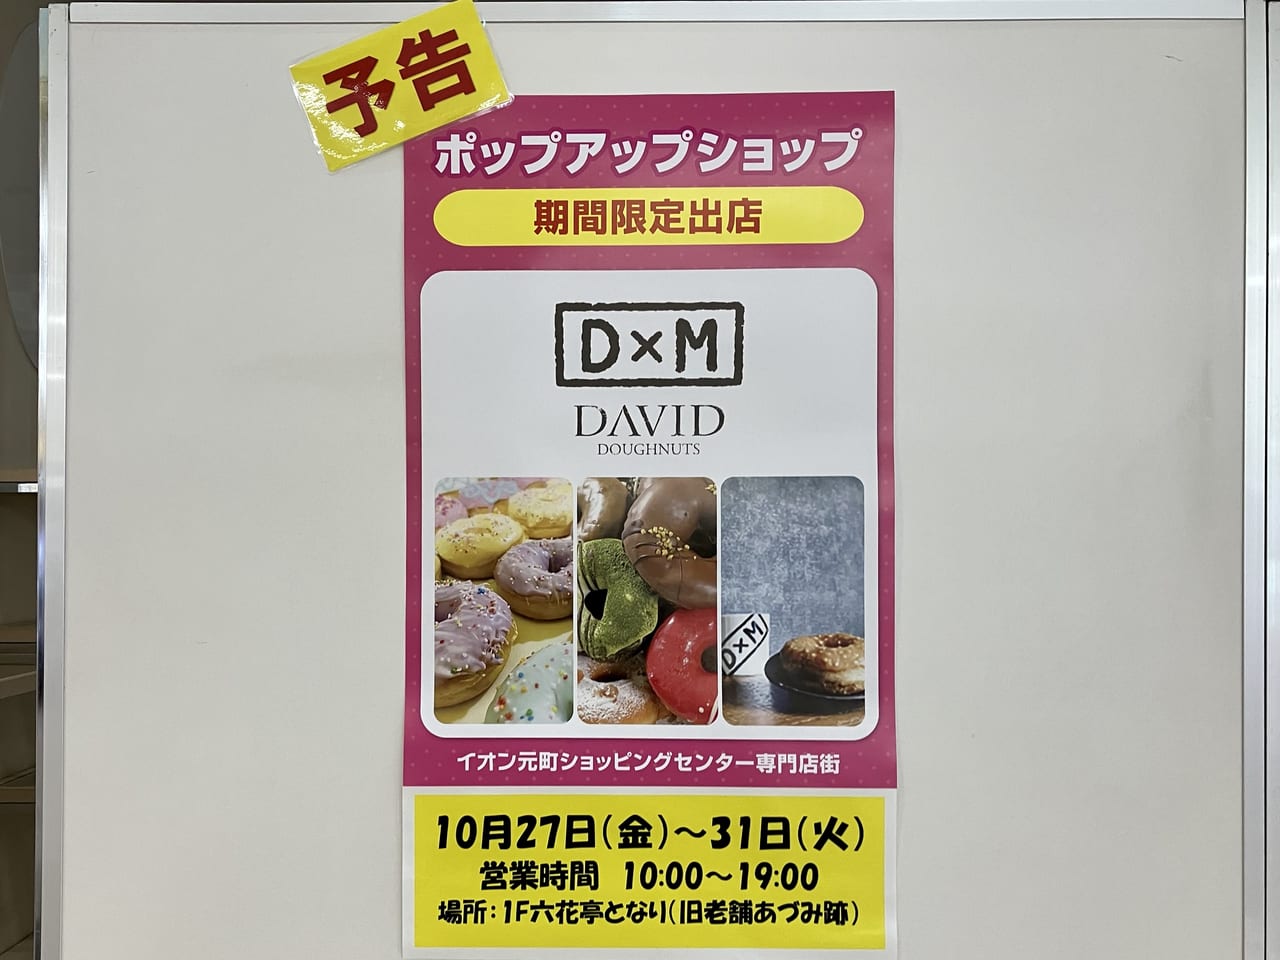 イオン札幌元町ショッピングセンターにポップアップショップ「D&M」が期間限定出店決定！人気のドーナッツが買えますよ。